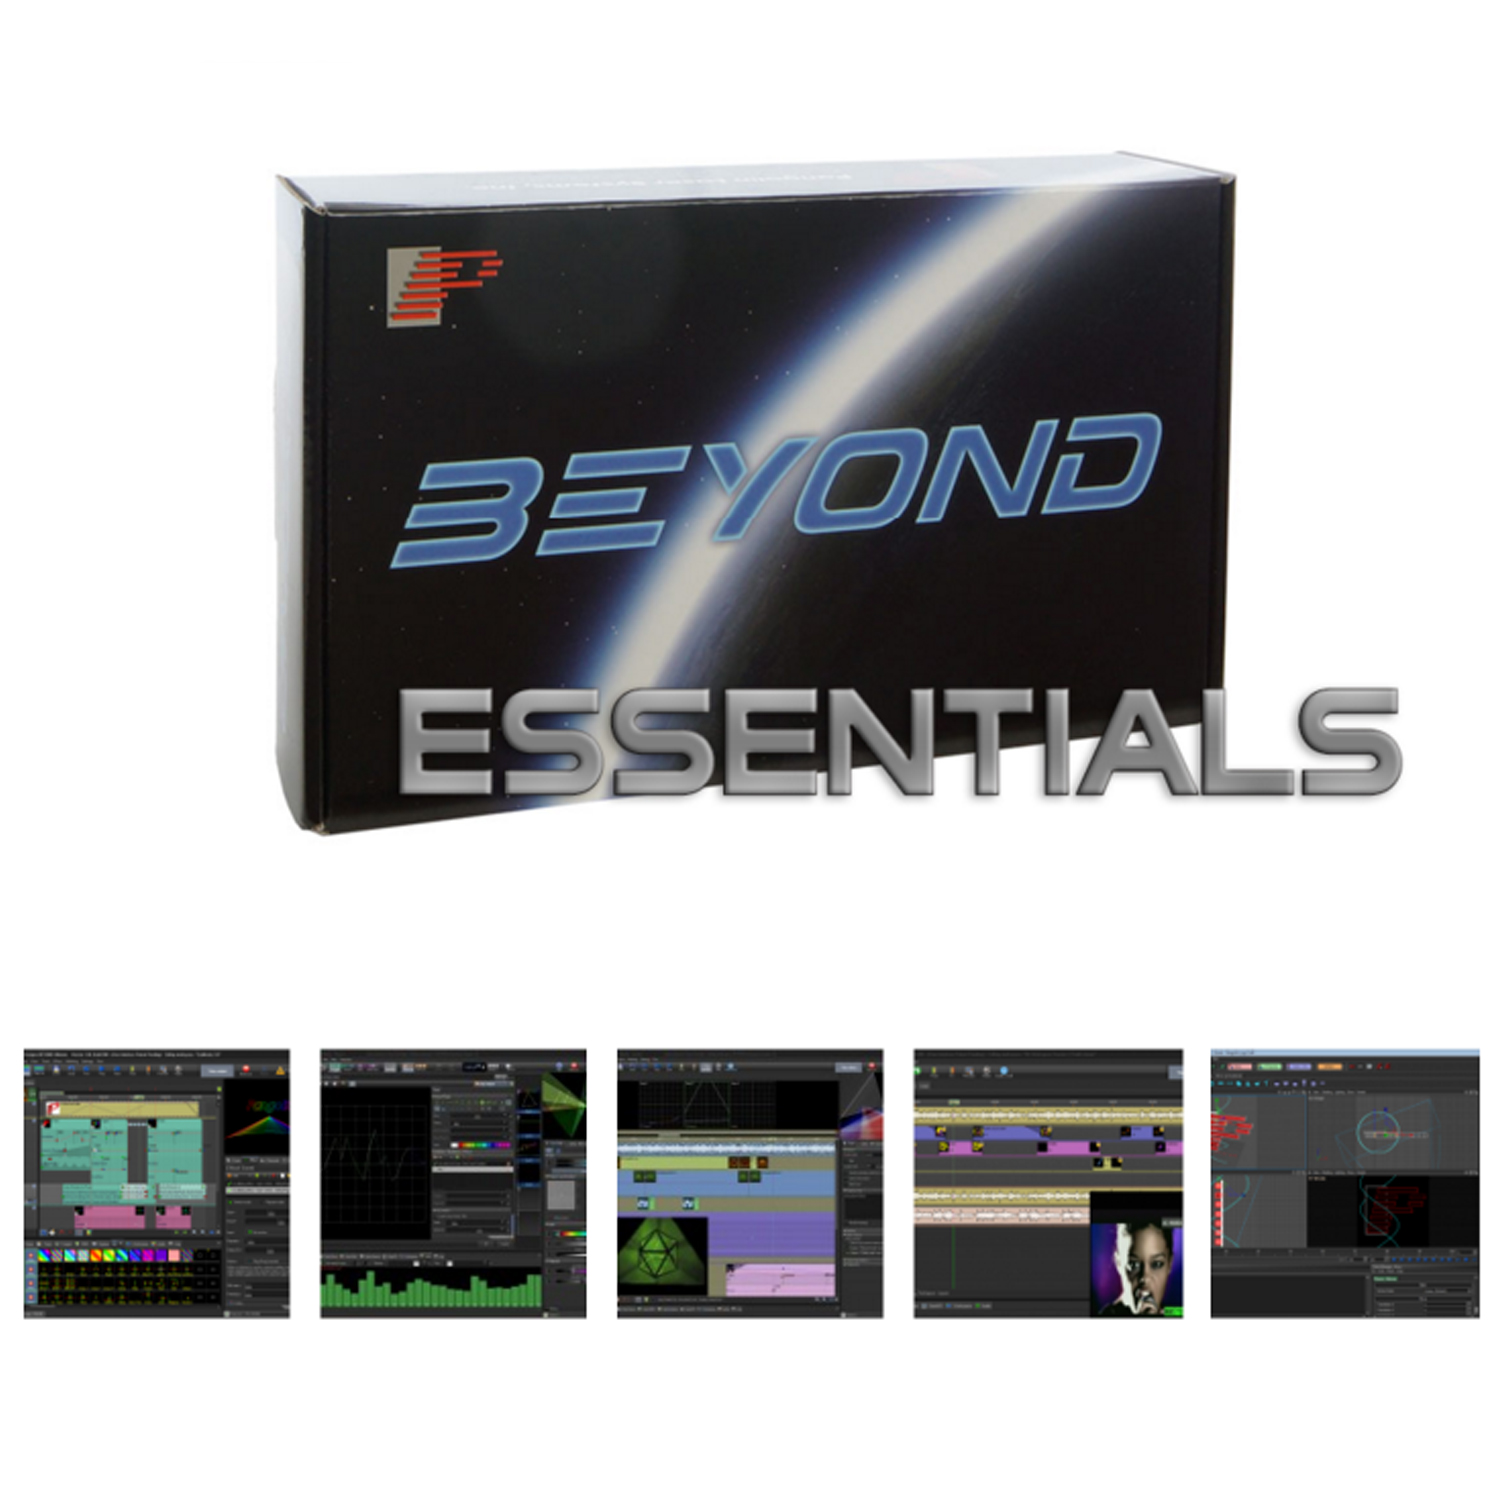 Beyond Essentials